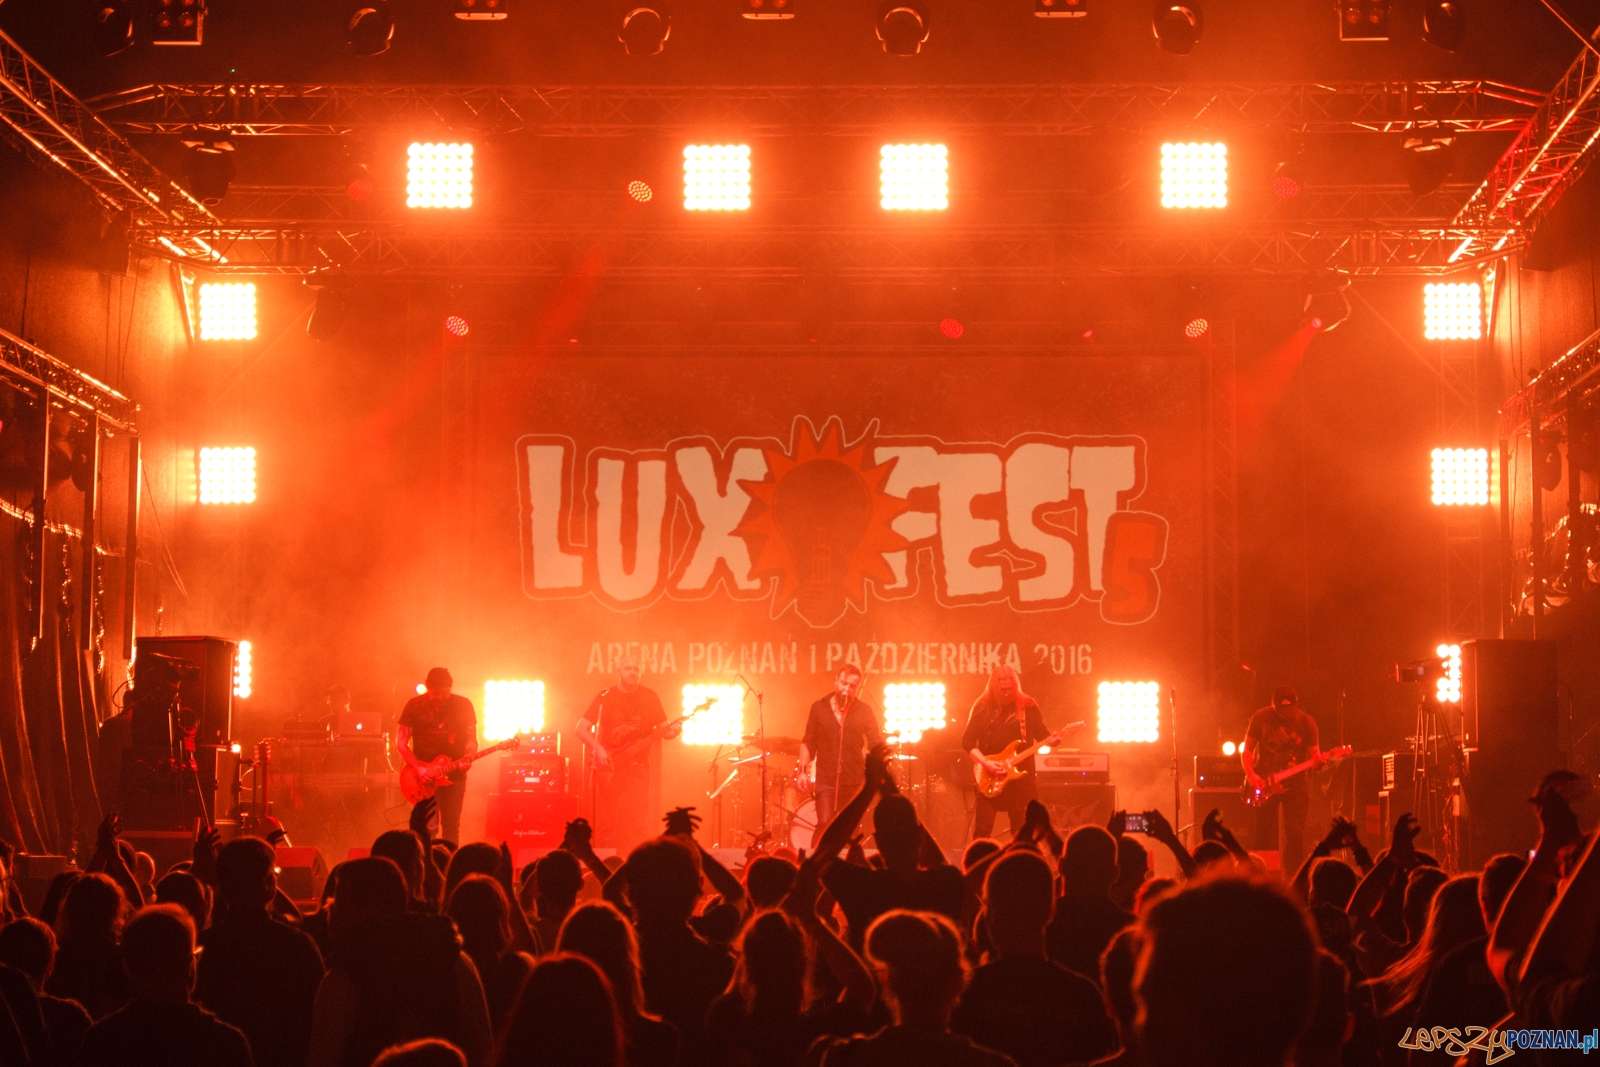 LuxFest 2016 - Poznań 1.10.2016 r.  Foto: LepszyPOZNAN.pl / Paweł Rychter